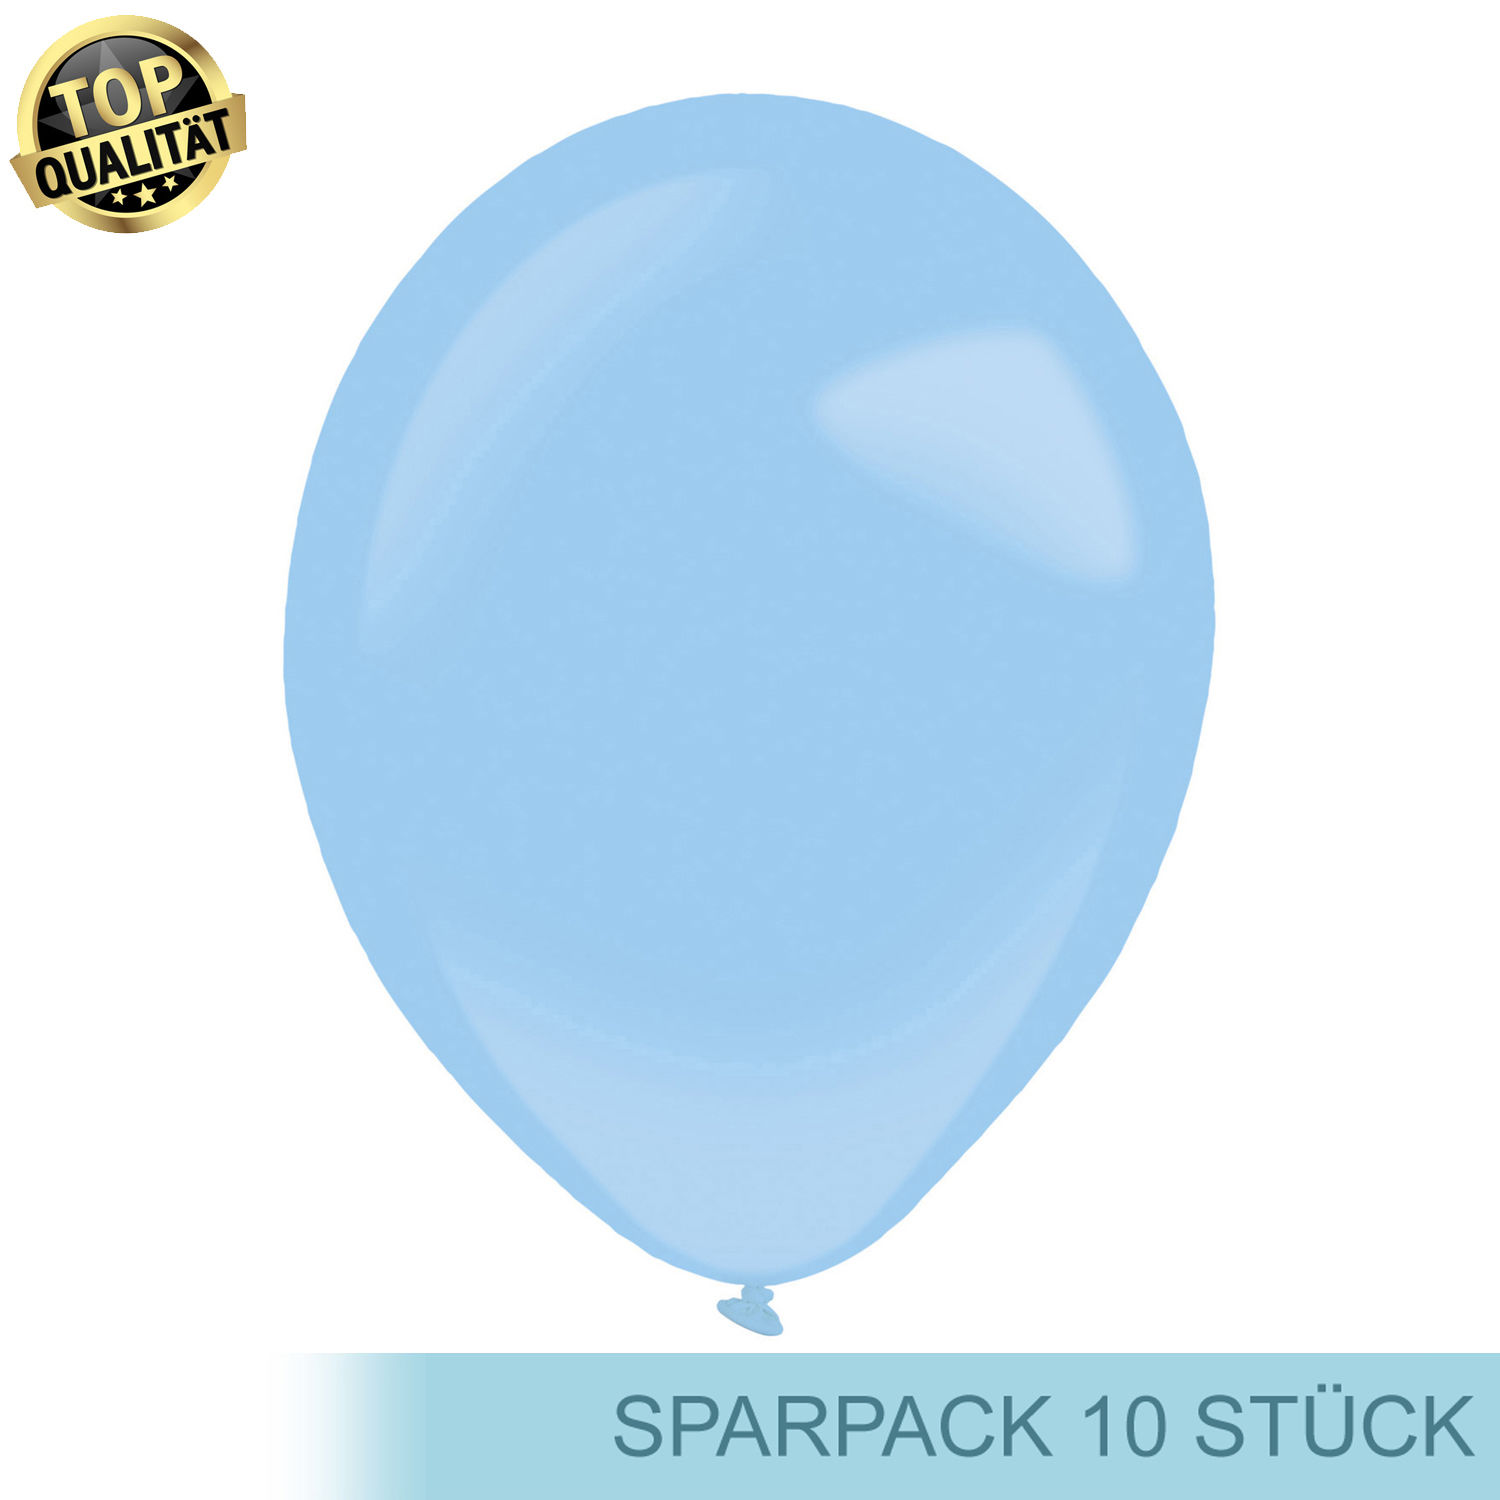 Premium Latex-Luftballon, rund, 10 Stück, ca. 27cm Durchmesser, Pastellblau / Pastel Blue - Ideal für viele Dekorationen - f